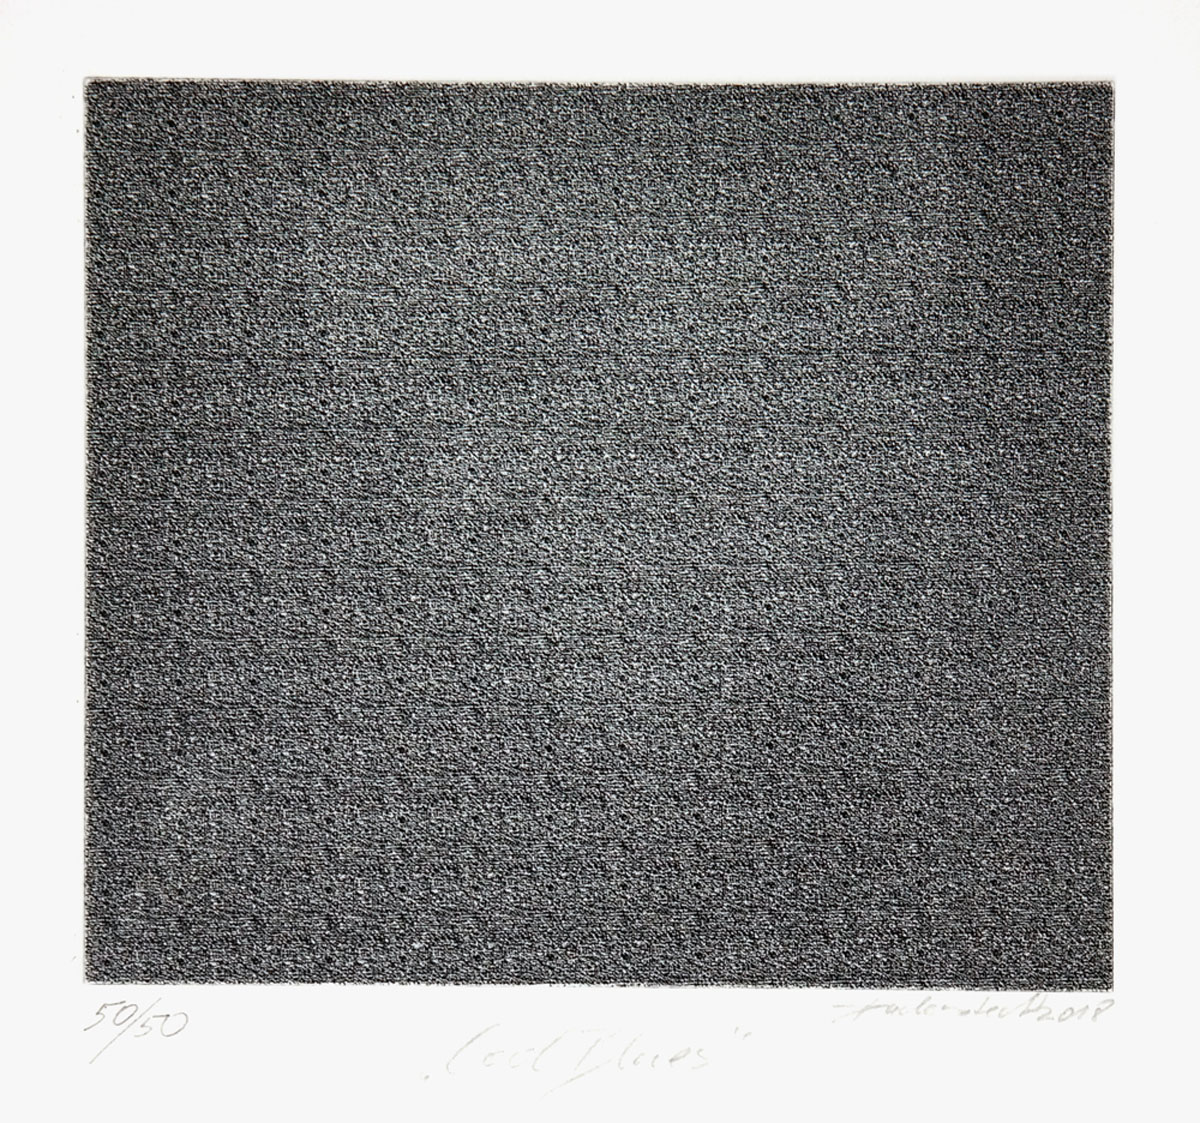 Ingo Duderstedt, Cool Blues, 2018, Radierung, Blattgröße: 48 x 38 cm, Motiv 15 x 16,5 cm, Auflage: 50